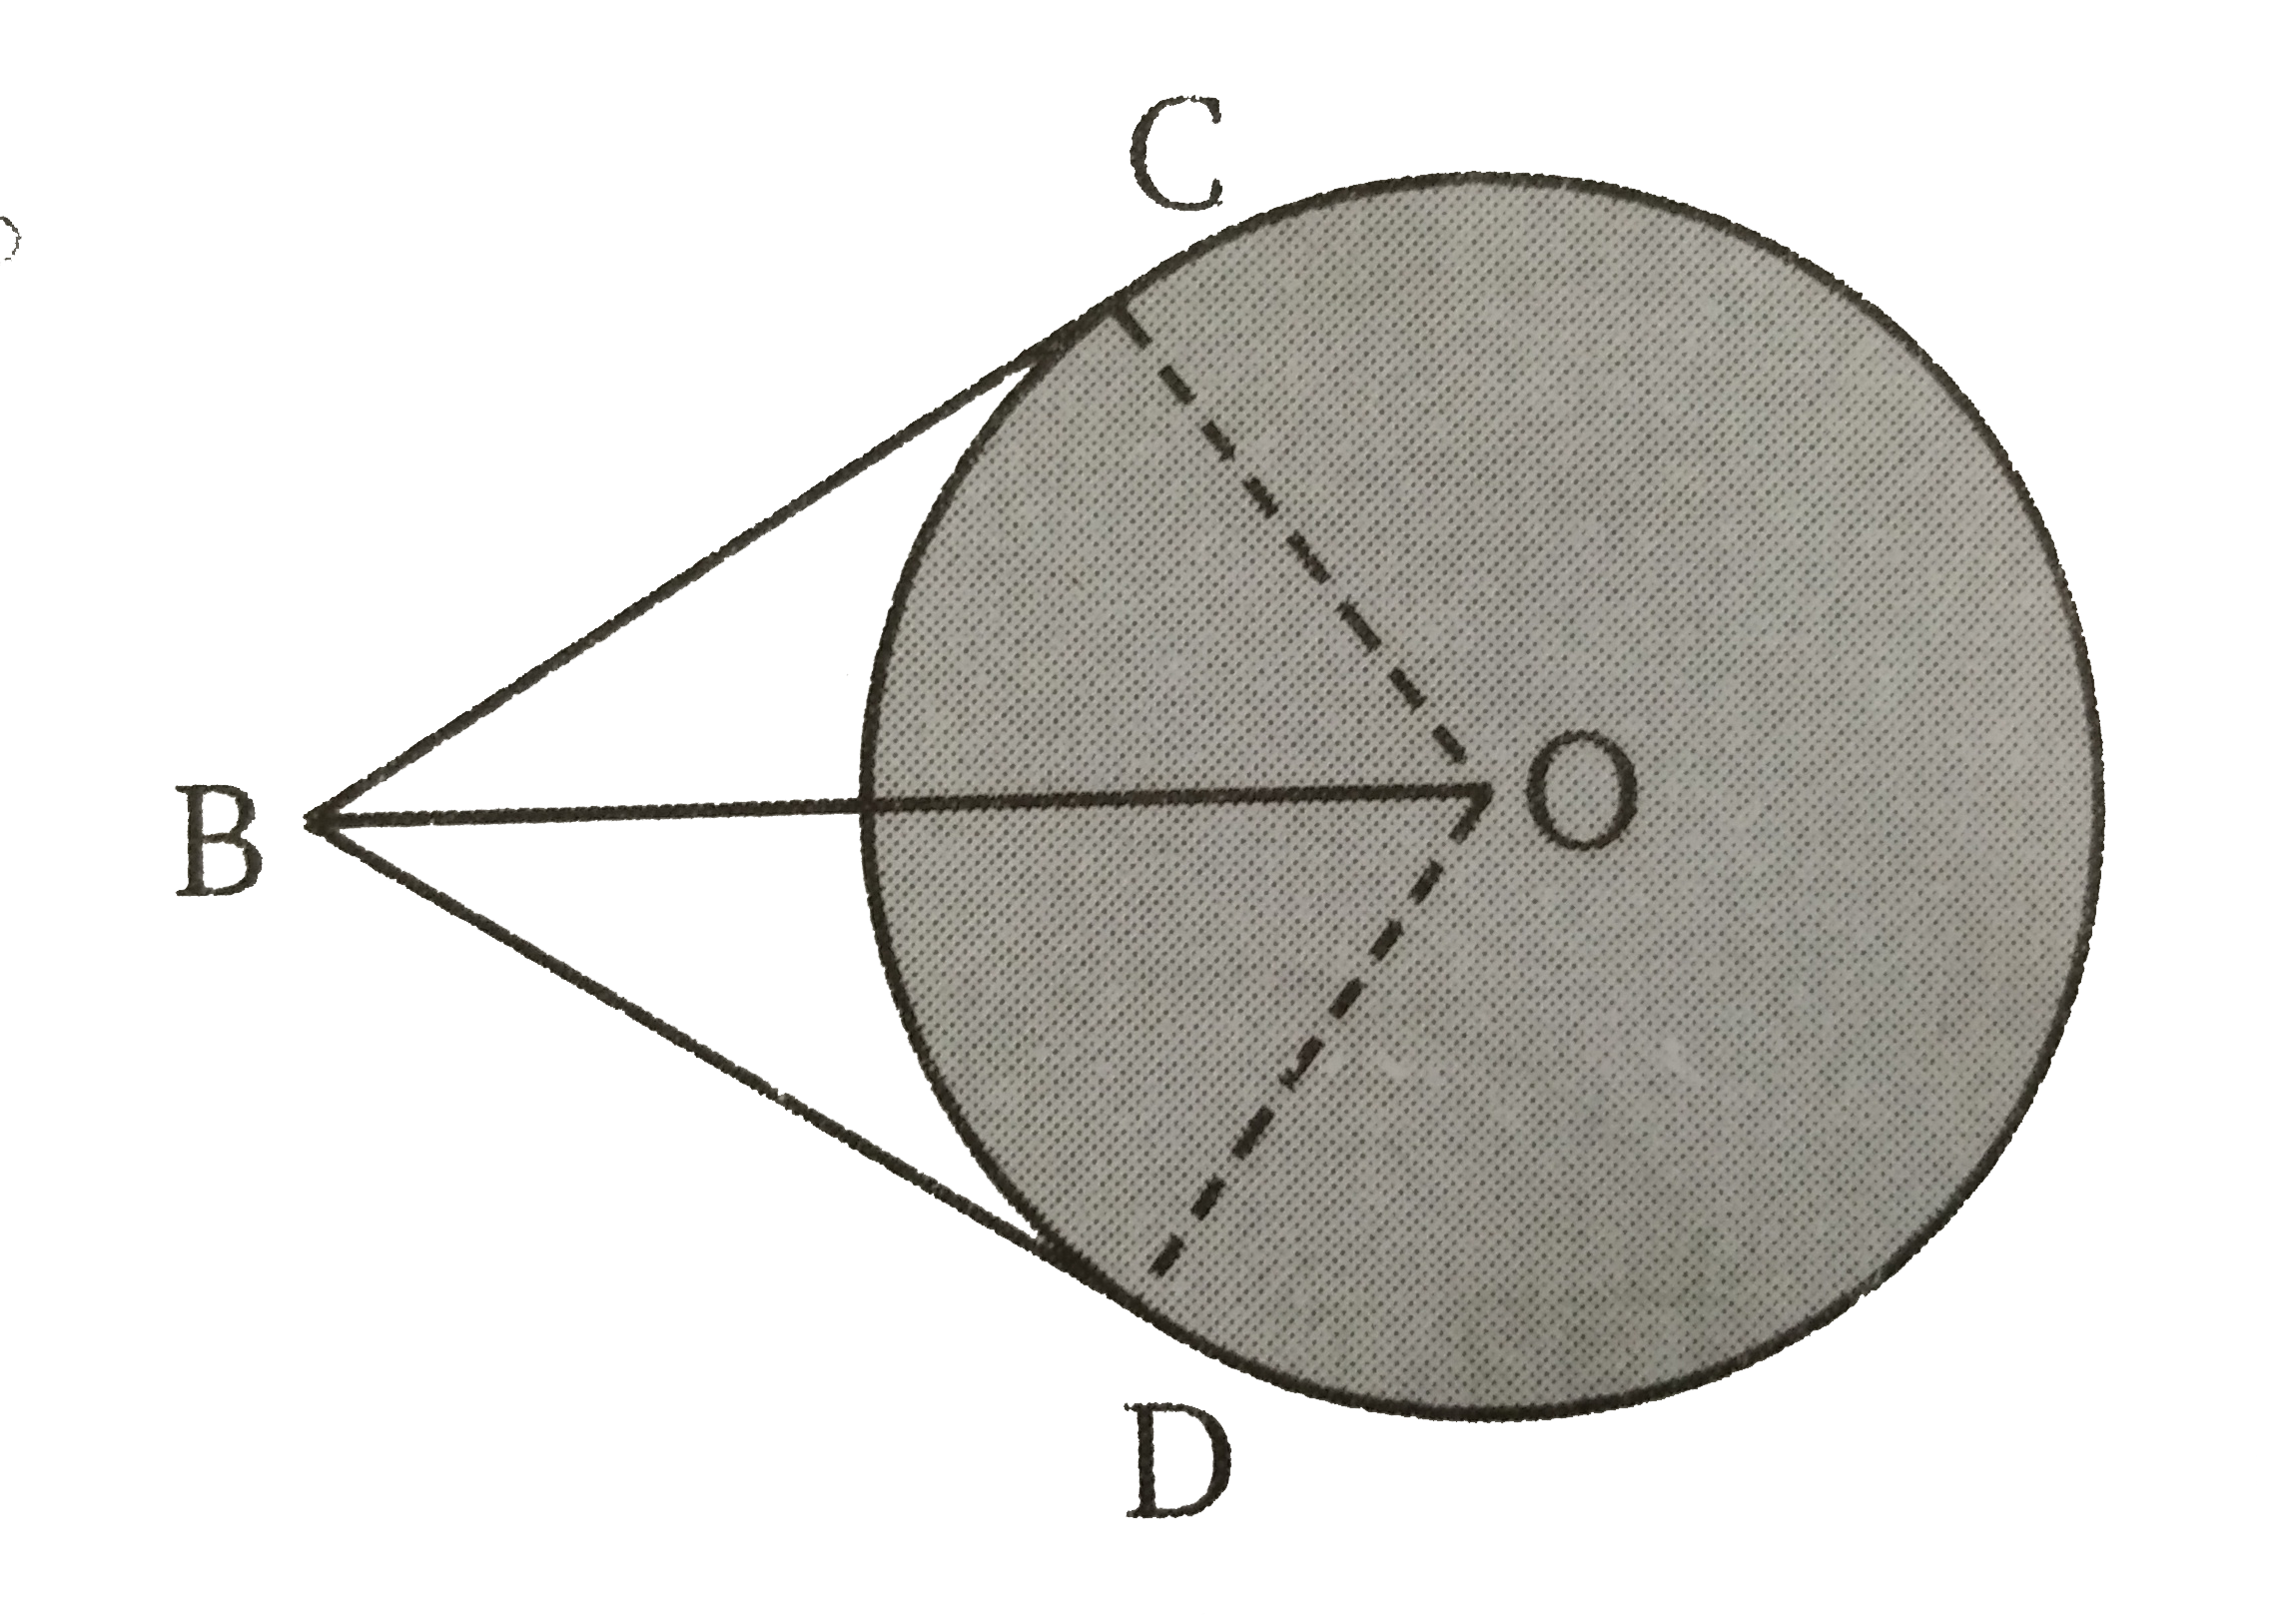 O केन्द्र वाले वृत्त पर दो स्पर्श रेखाखण्ड BC  व  BD इस प्रकार हैं कि  angle CBD = 120^(@) है । सिद्ध कीजिए कि  OB = 2BC